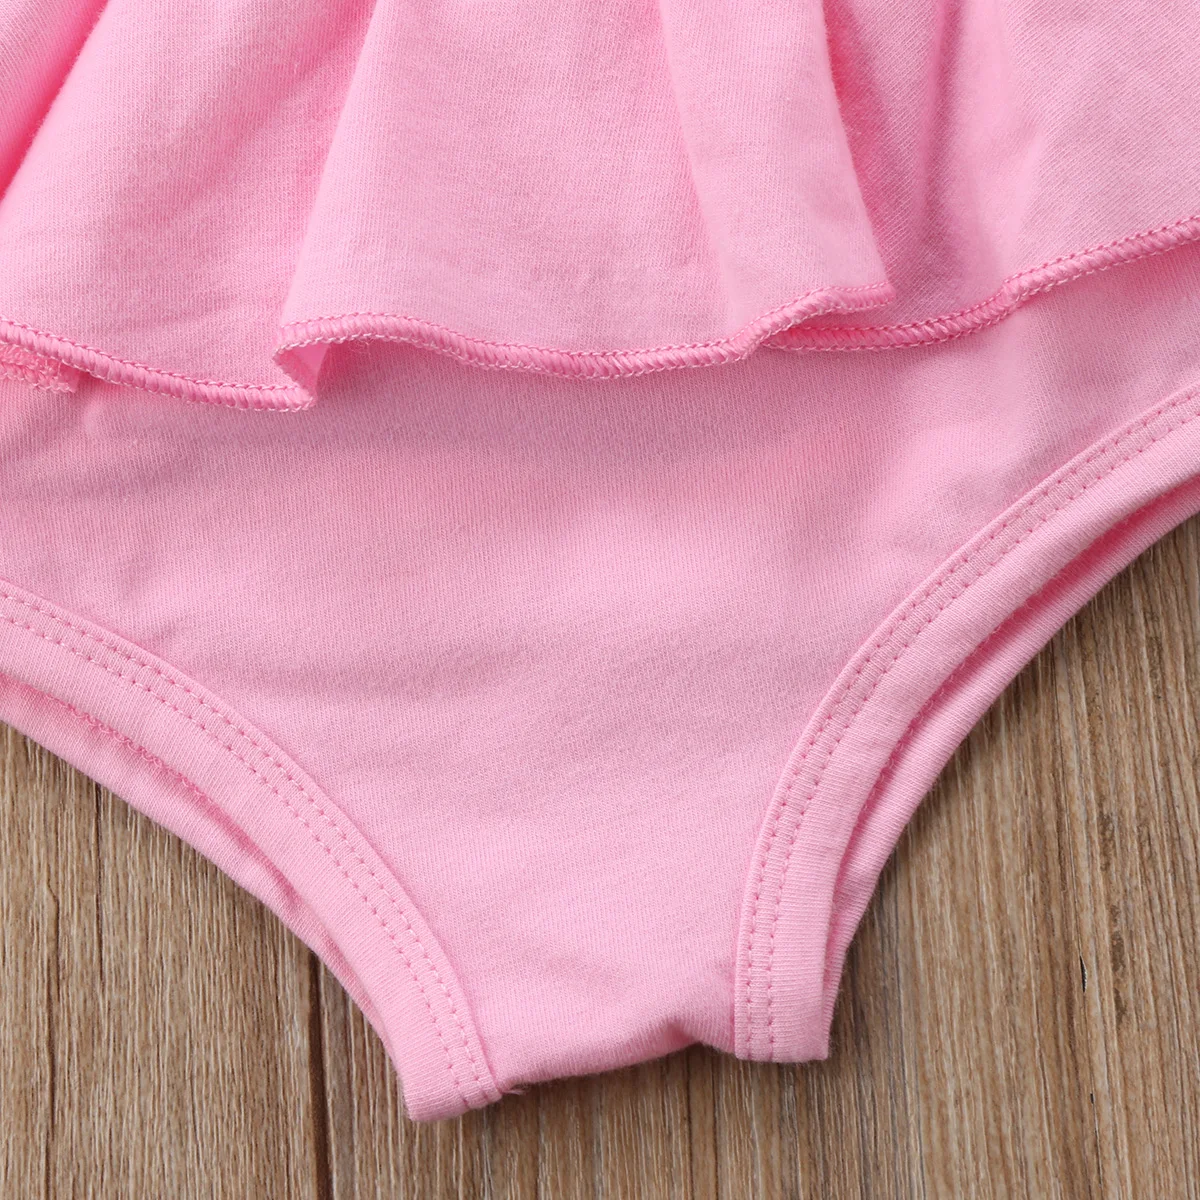 Для новорожденных, одежда для детей и малышей плотное платье для девочек, Короткие штаны-шаровары брюки PP штаны-шаровары Летние Симпатичные Пользовательские трусики на возраст от 0 до 24 месяцев